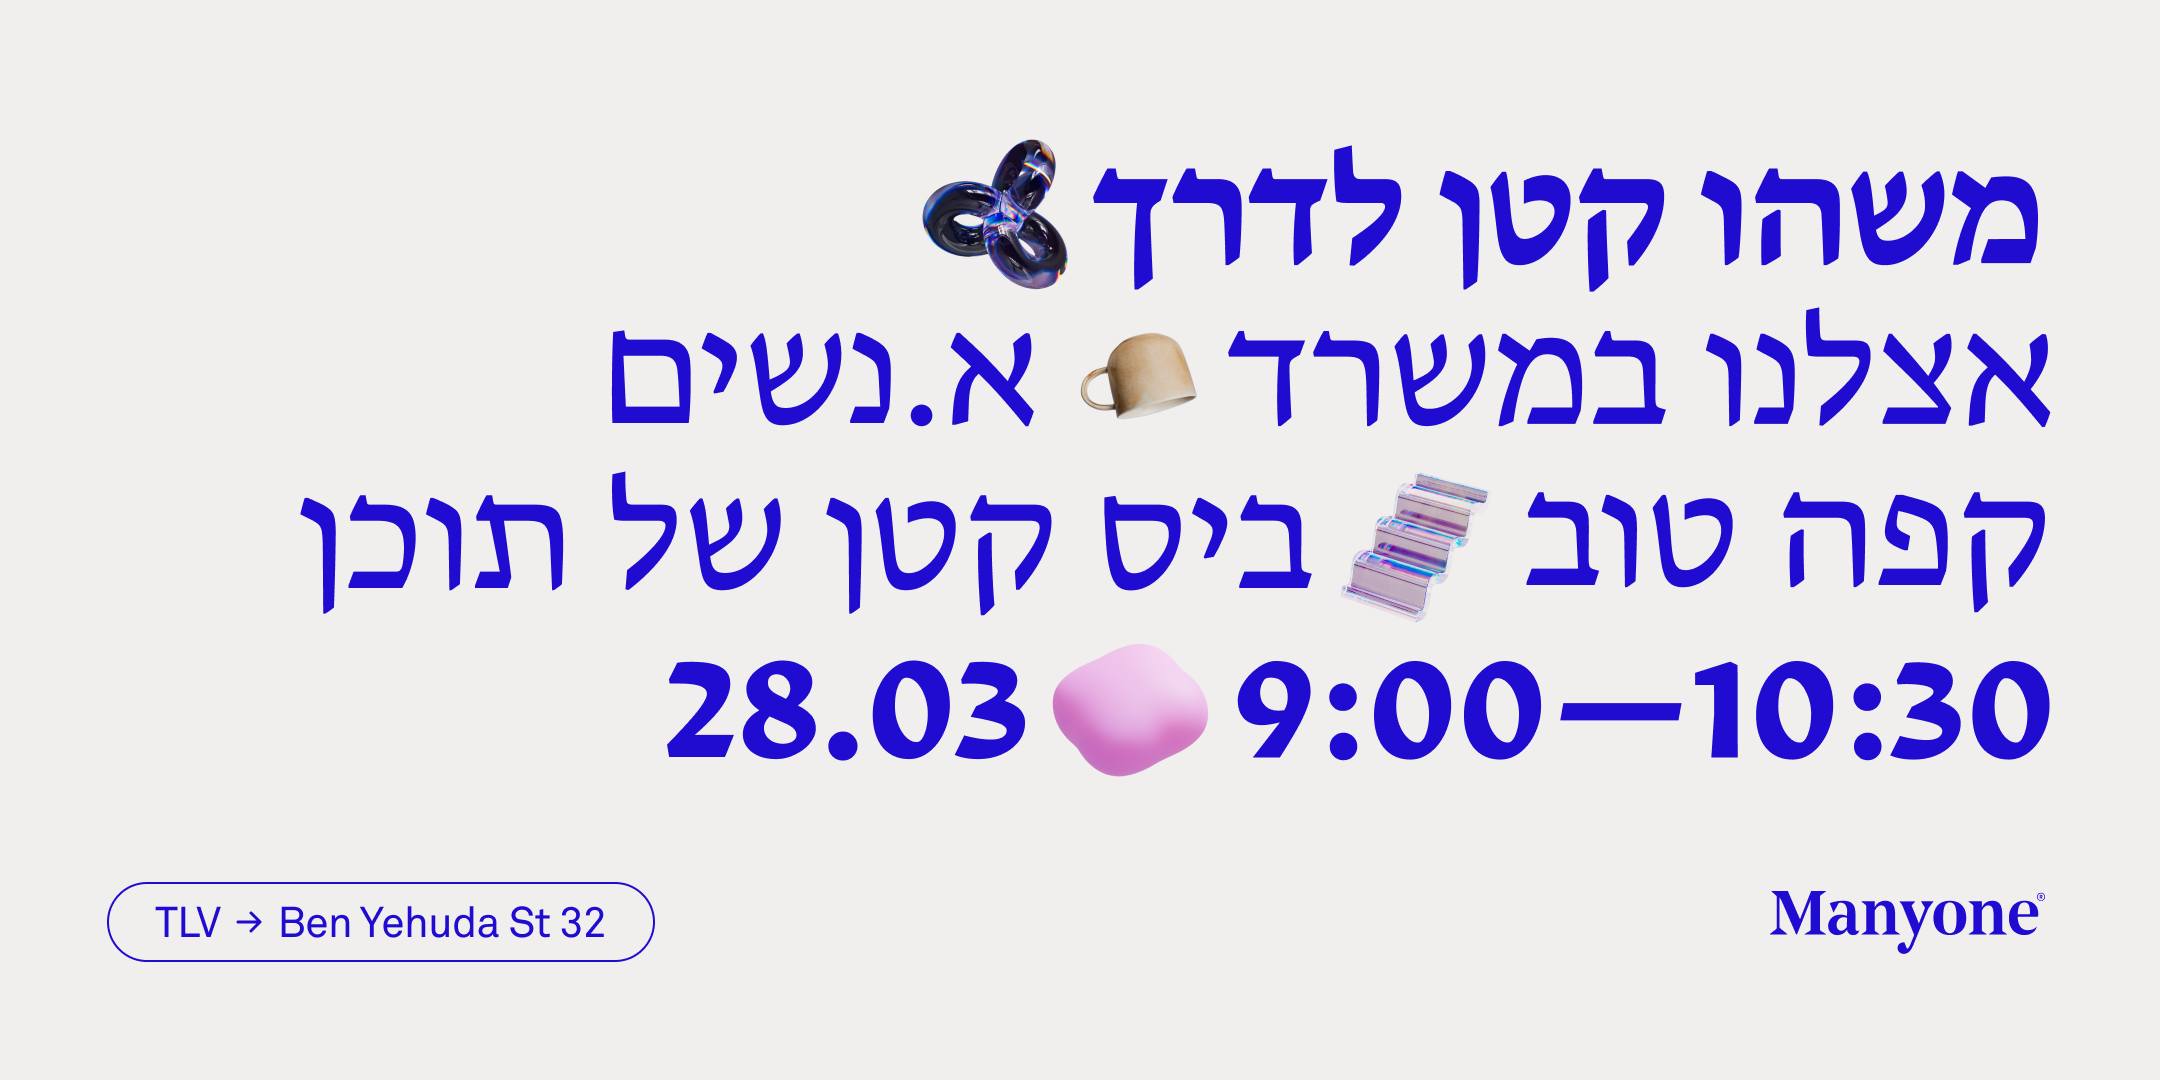 Manyone - women’s meetup @ Ben Yehuda 32